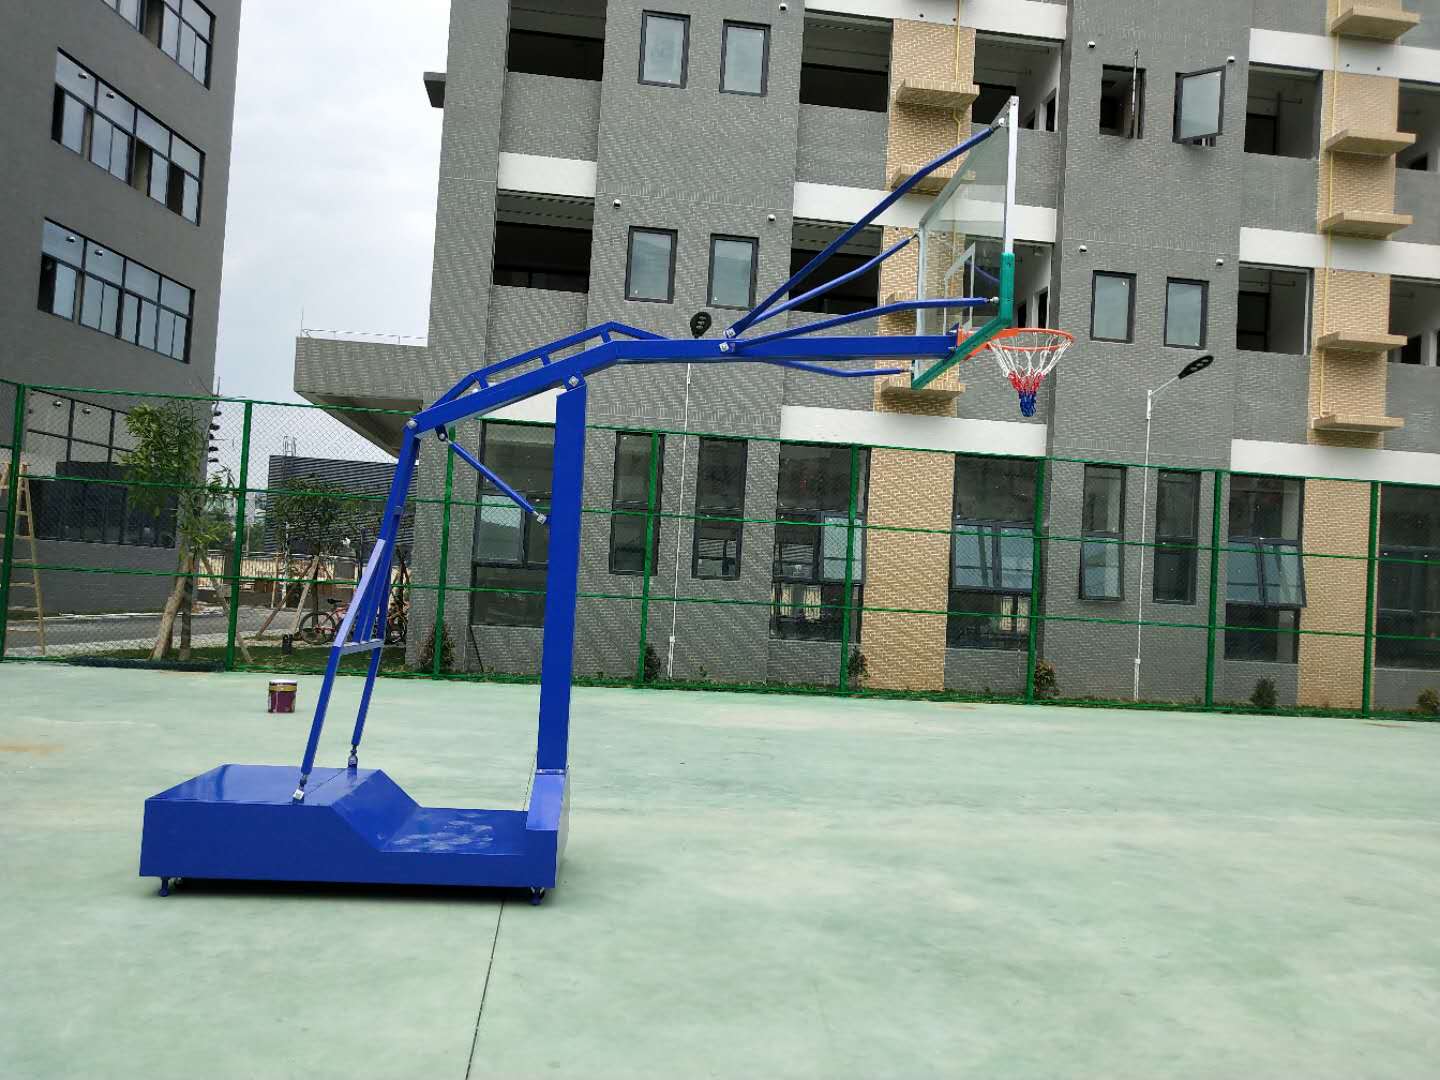 供应篮球架 移动篮球架 固定式篮球架 篮球架厂家 烤漆篮球架 可移动篮球架厂家固定式篮球架厂家